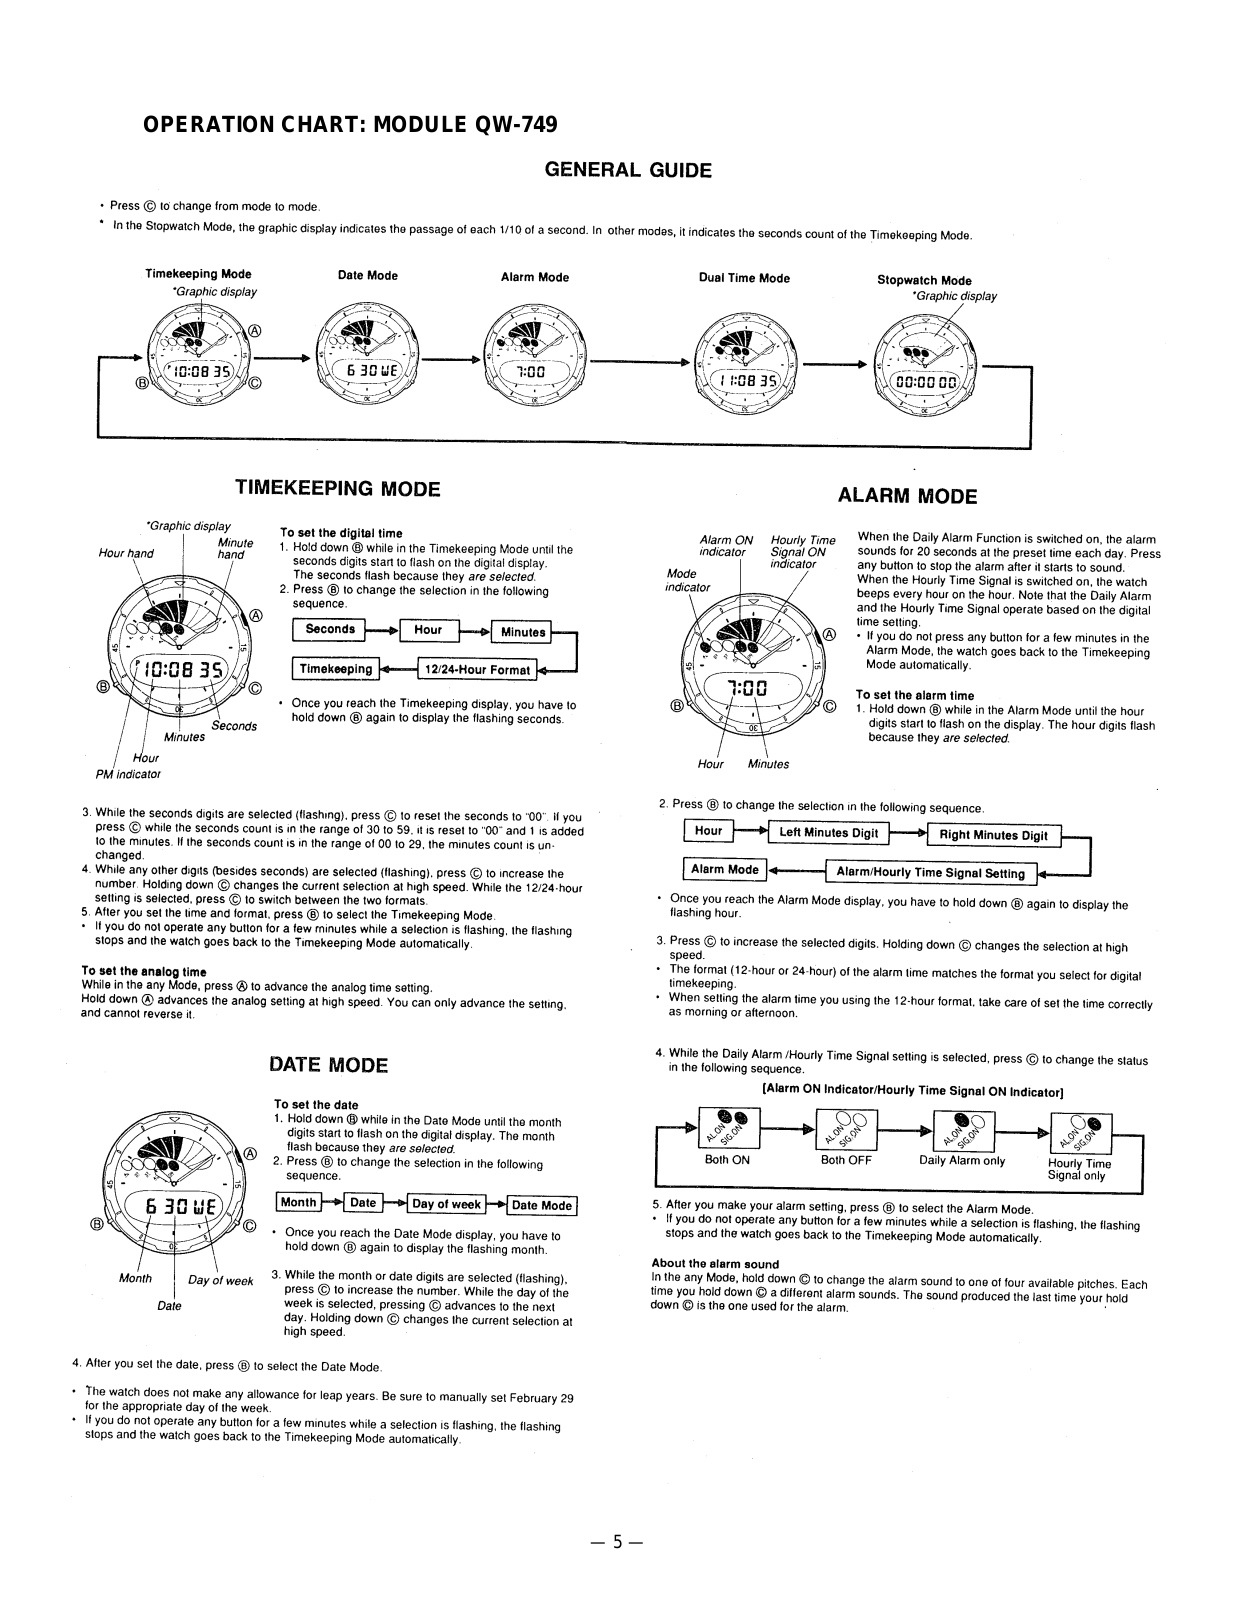 Casio 749 Owner's Manual